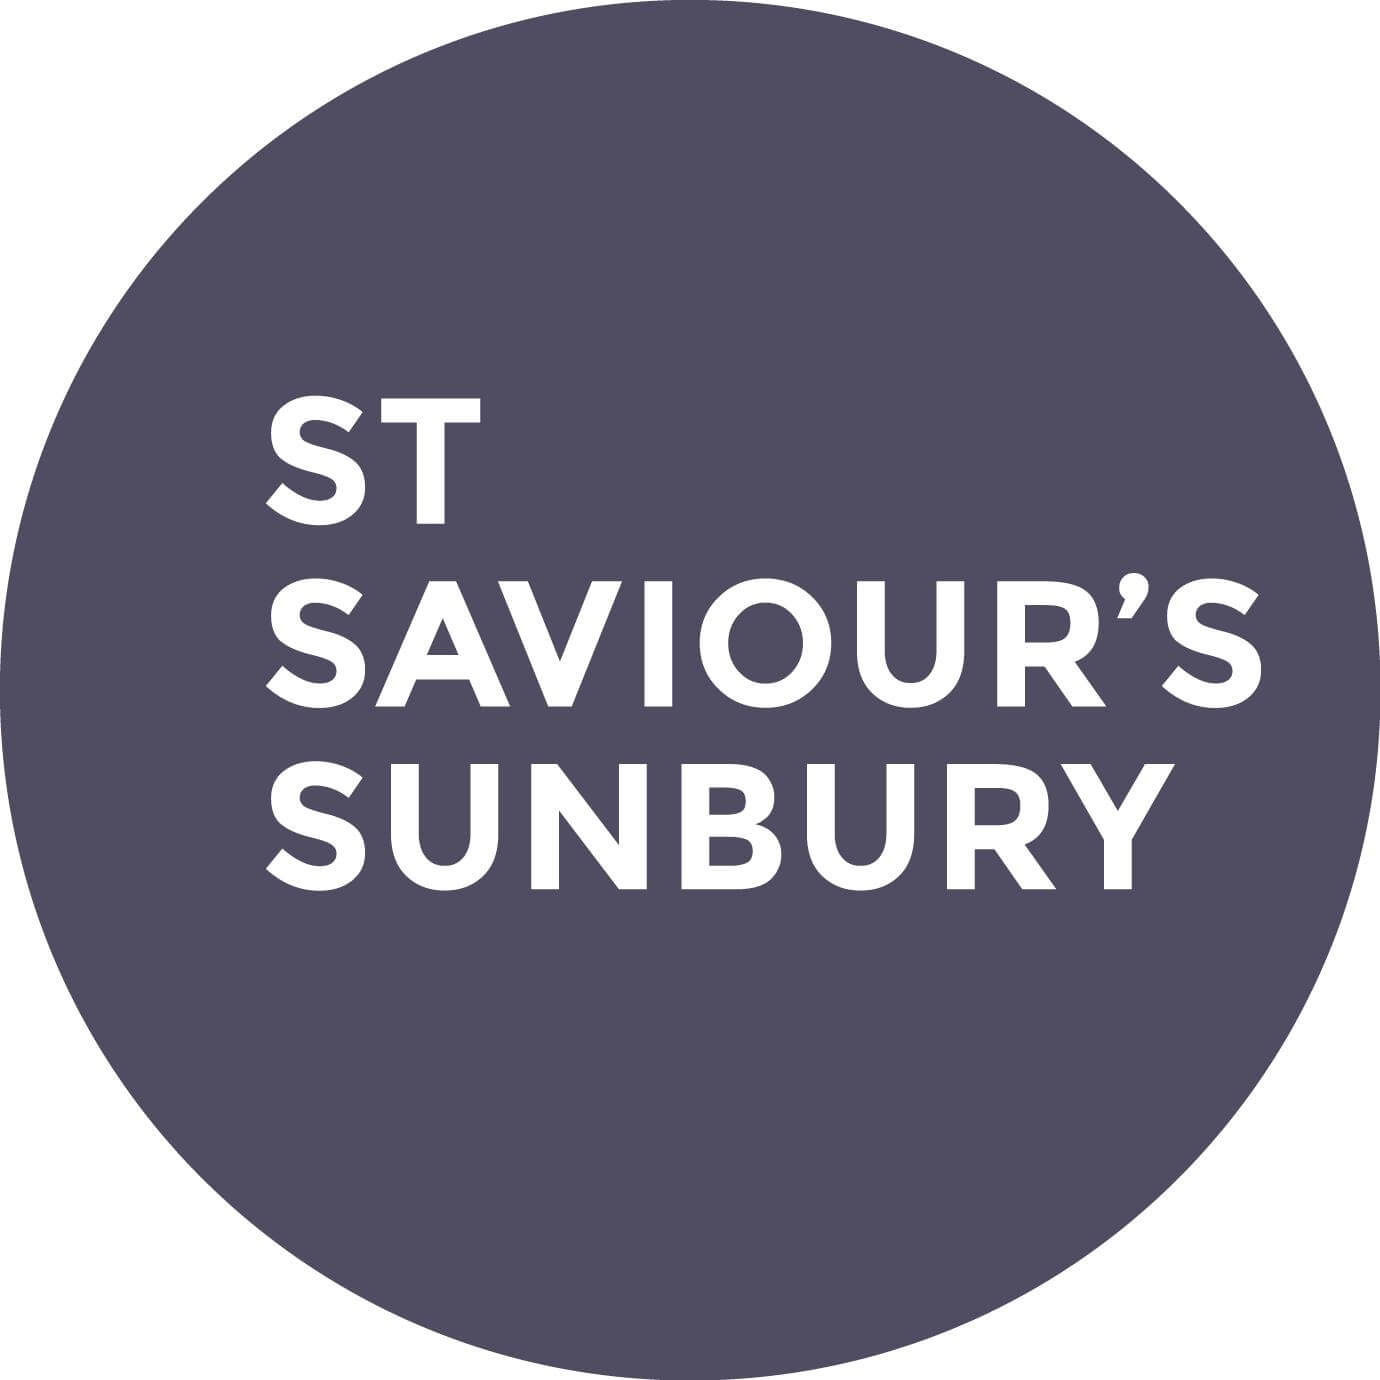 St Saviour's Sunbury